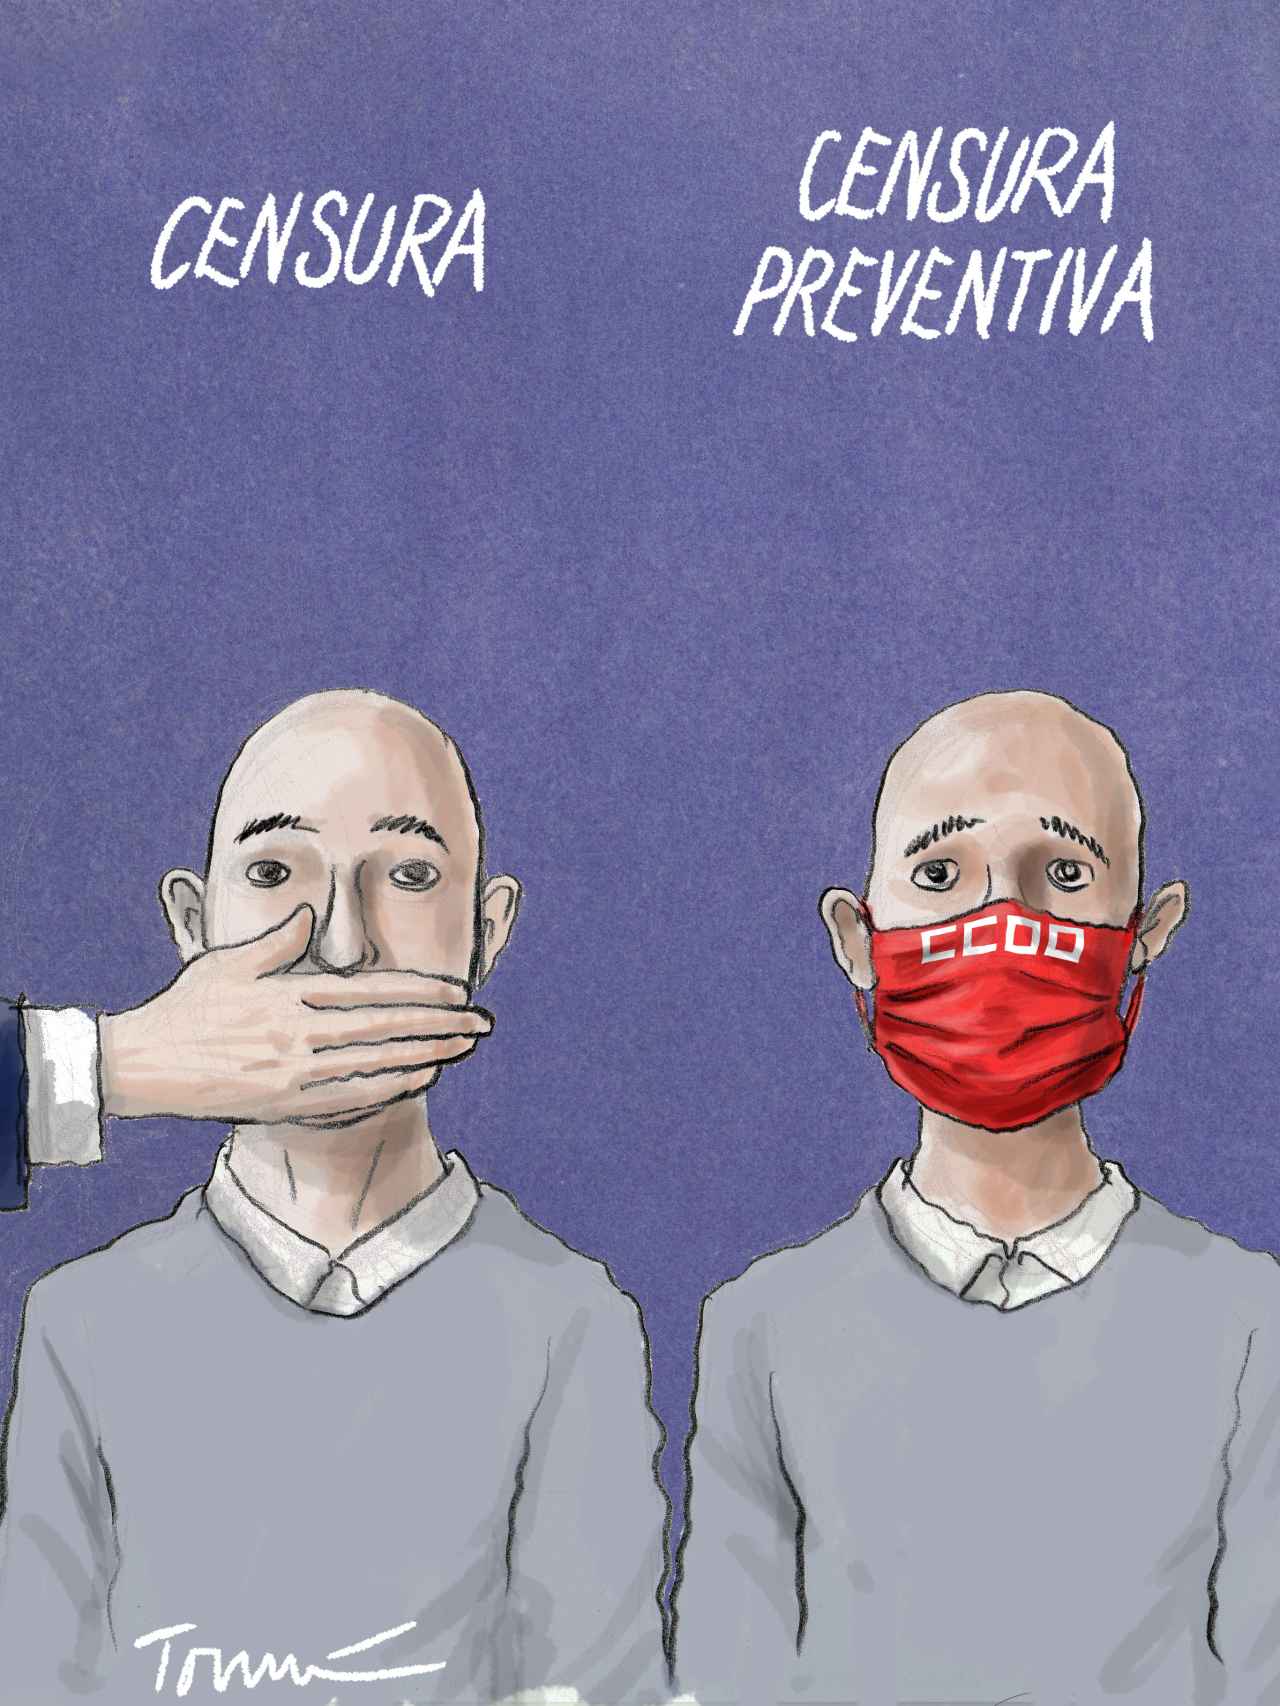 Prevención censora